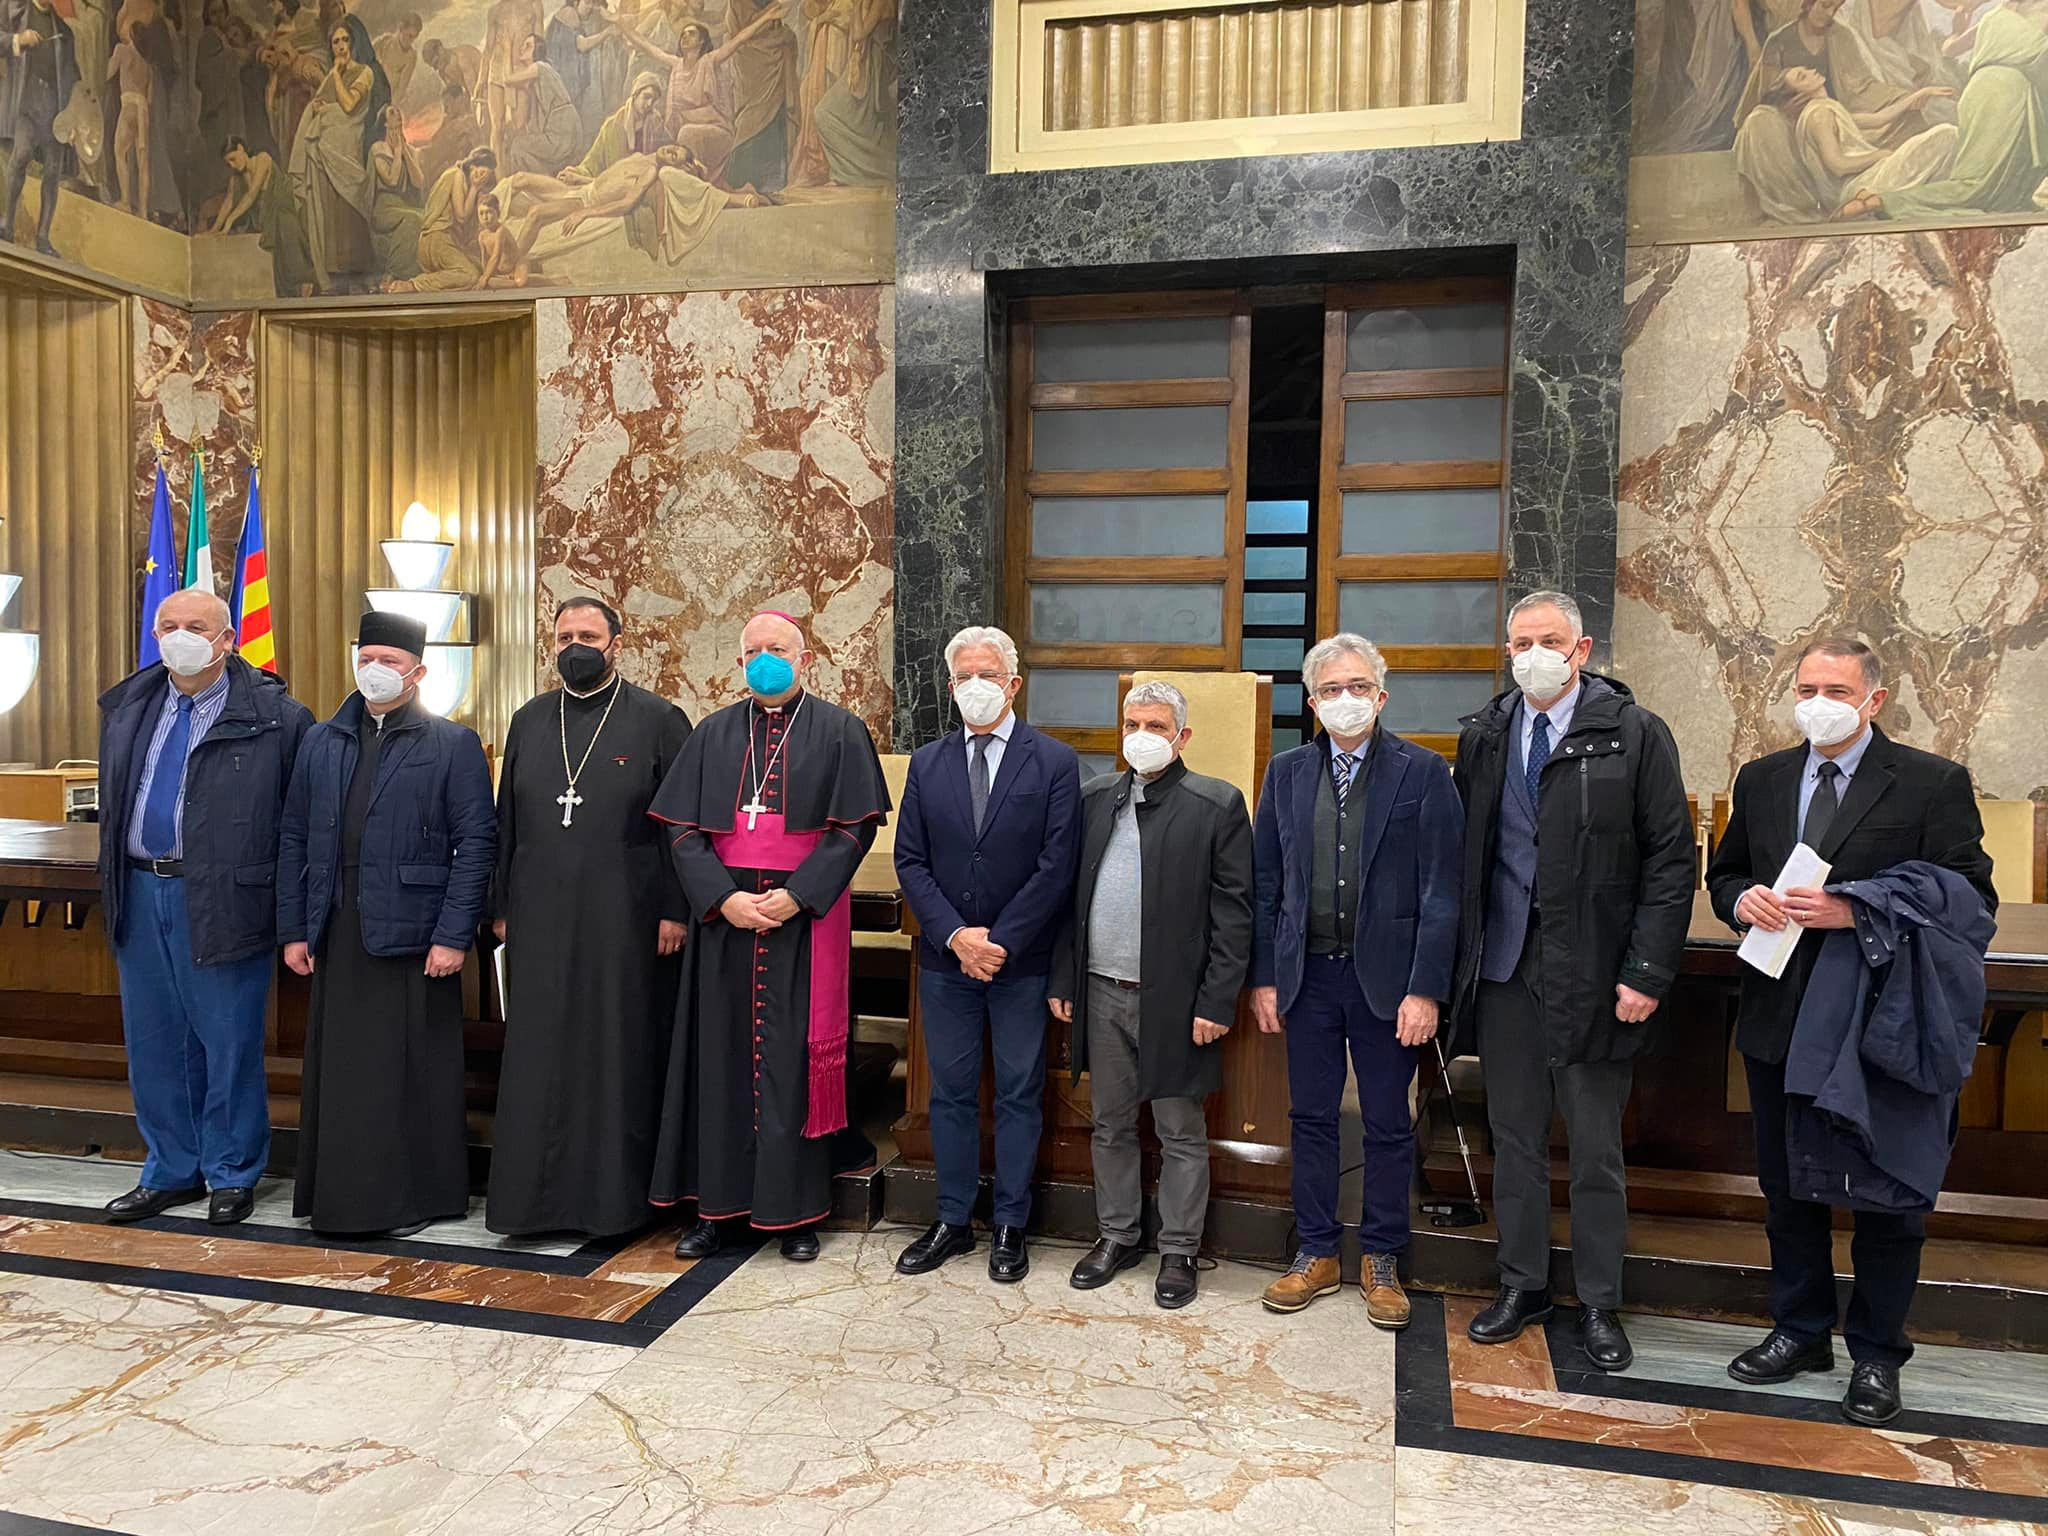 A Salerno nasce la Scuola di Dialogo Interreligioso e interculturale  Il sodalizio presentato a conclusione dell’incontro interreligioso di preghiera per la Pace